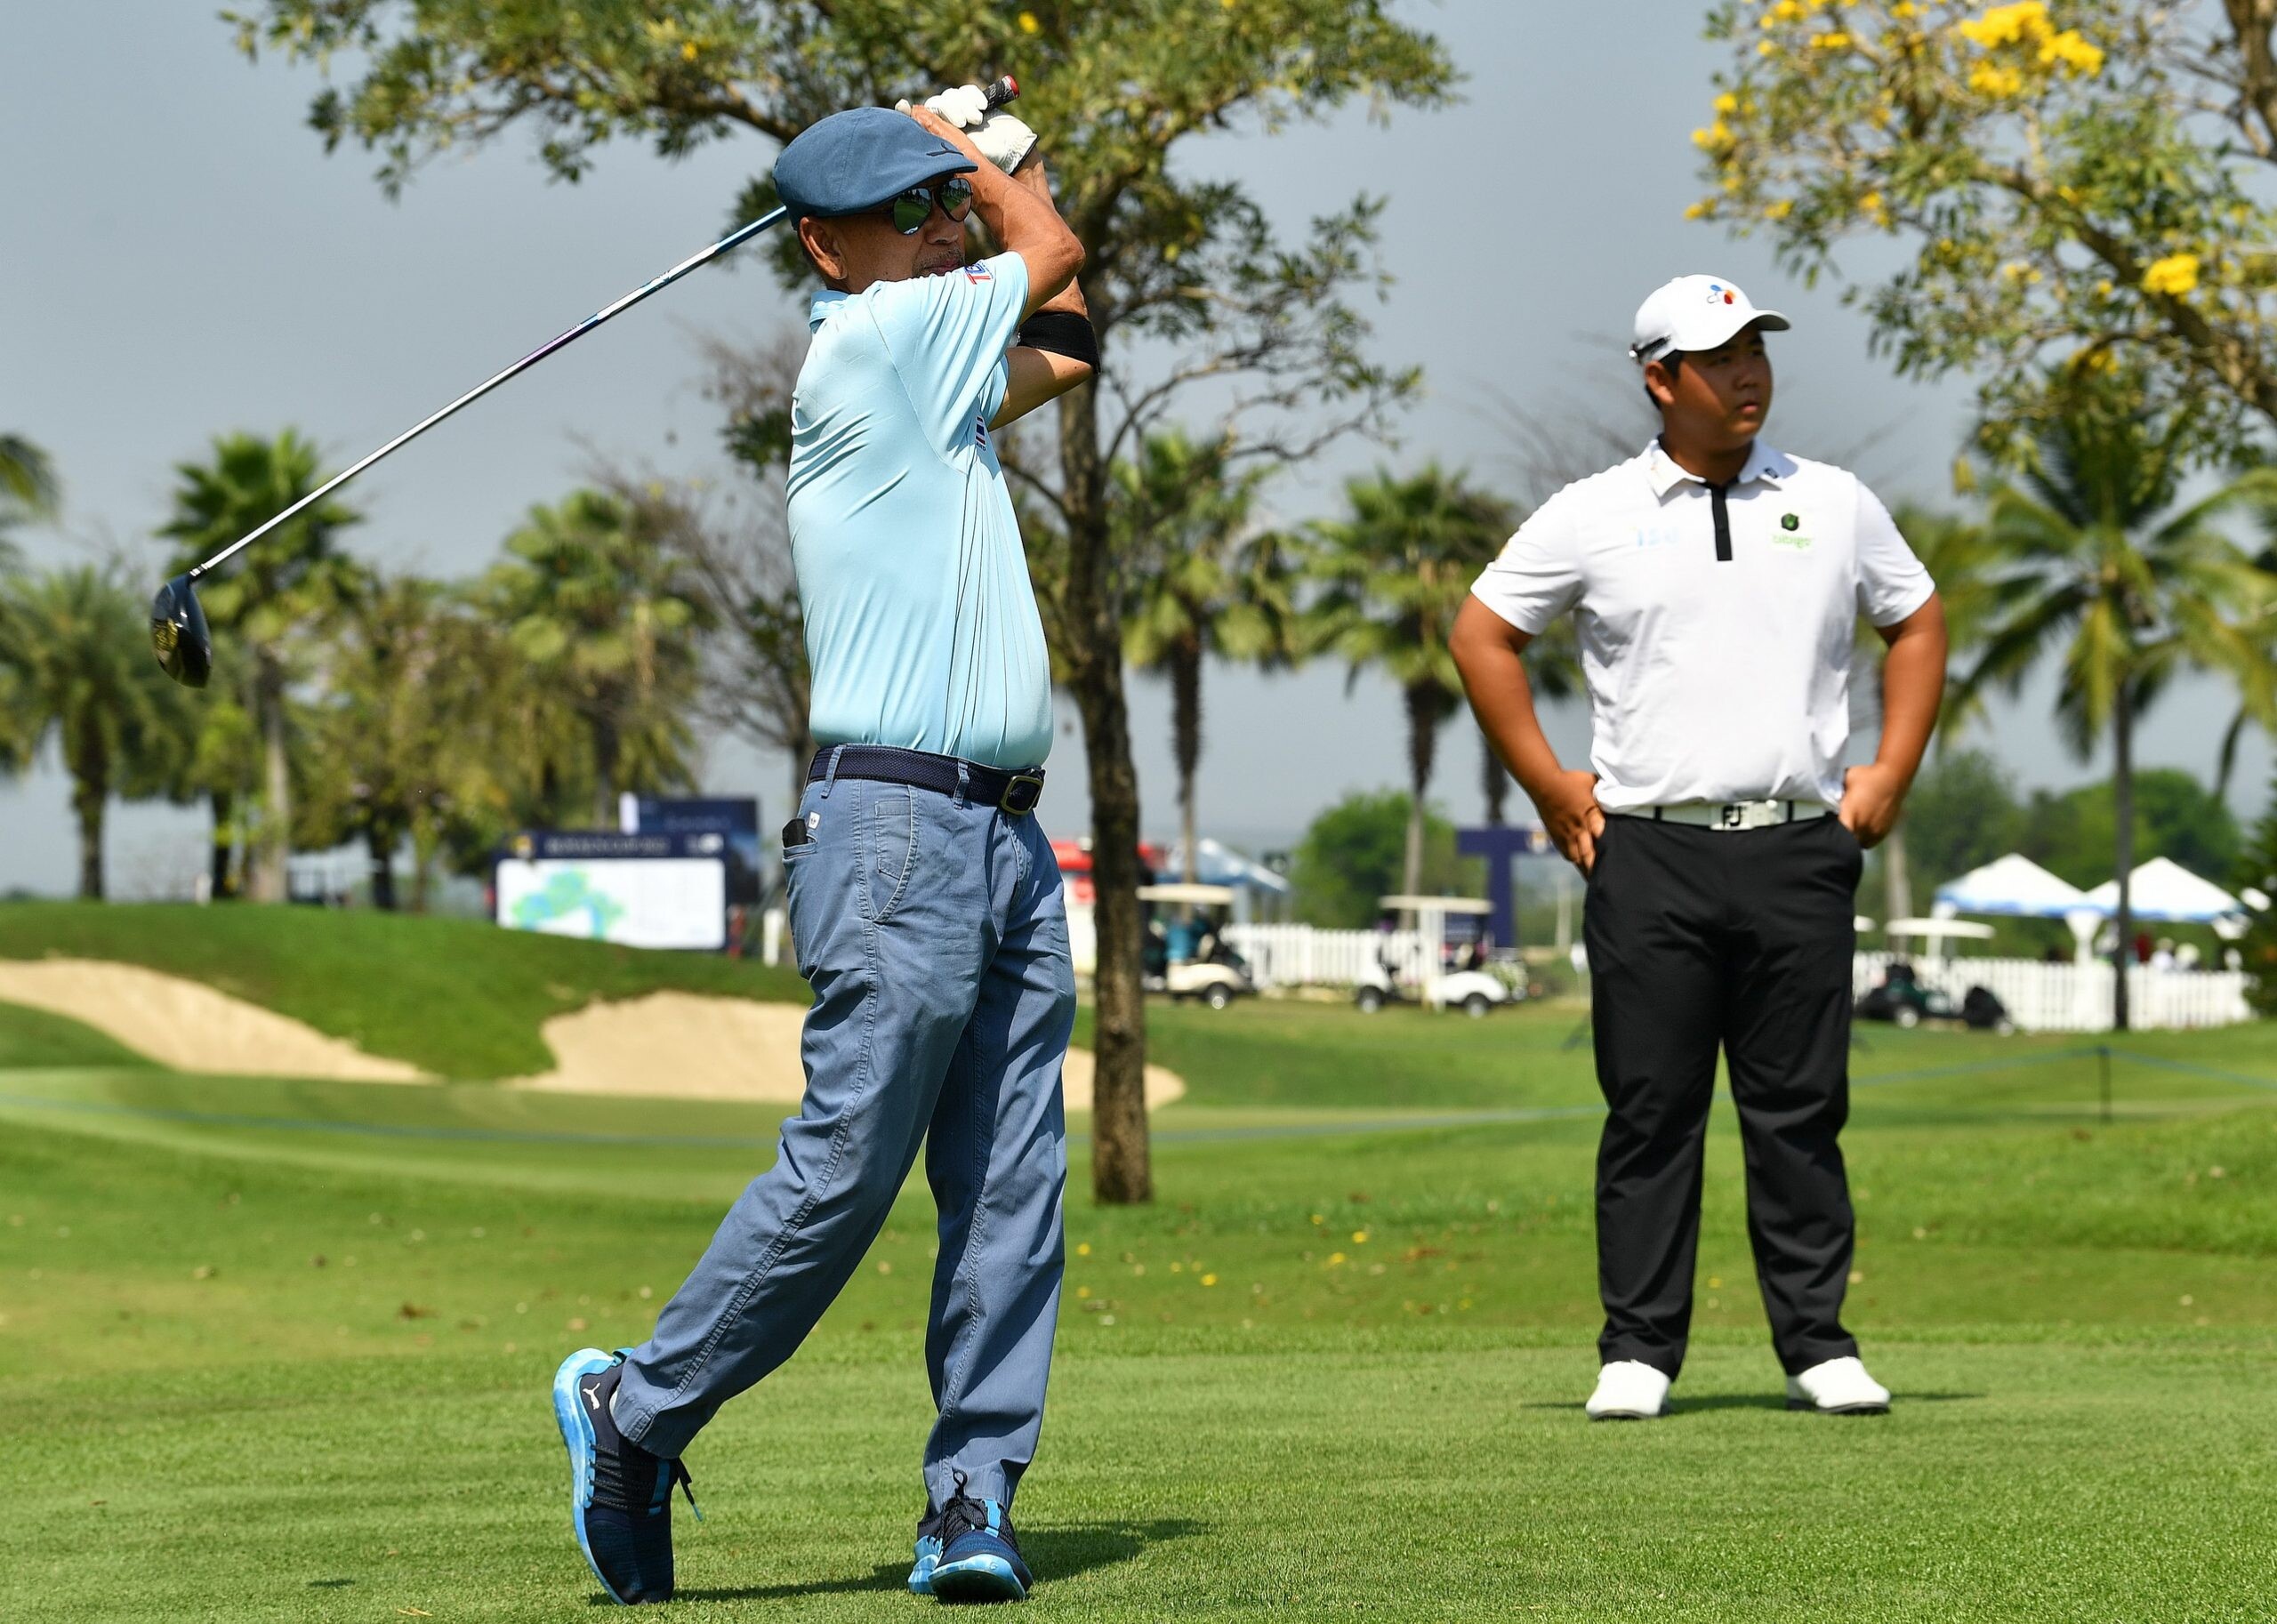 "สดมภ์-จูฮยอง" นำ 7 นักกอล์ฟเอเชียน ทัวร์ ร่วมแมตช์พิเศษ "Private golf game"